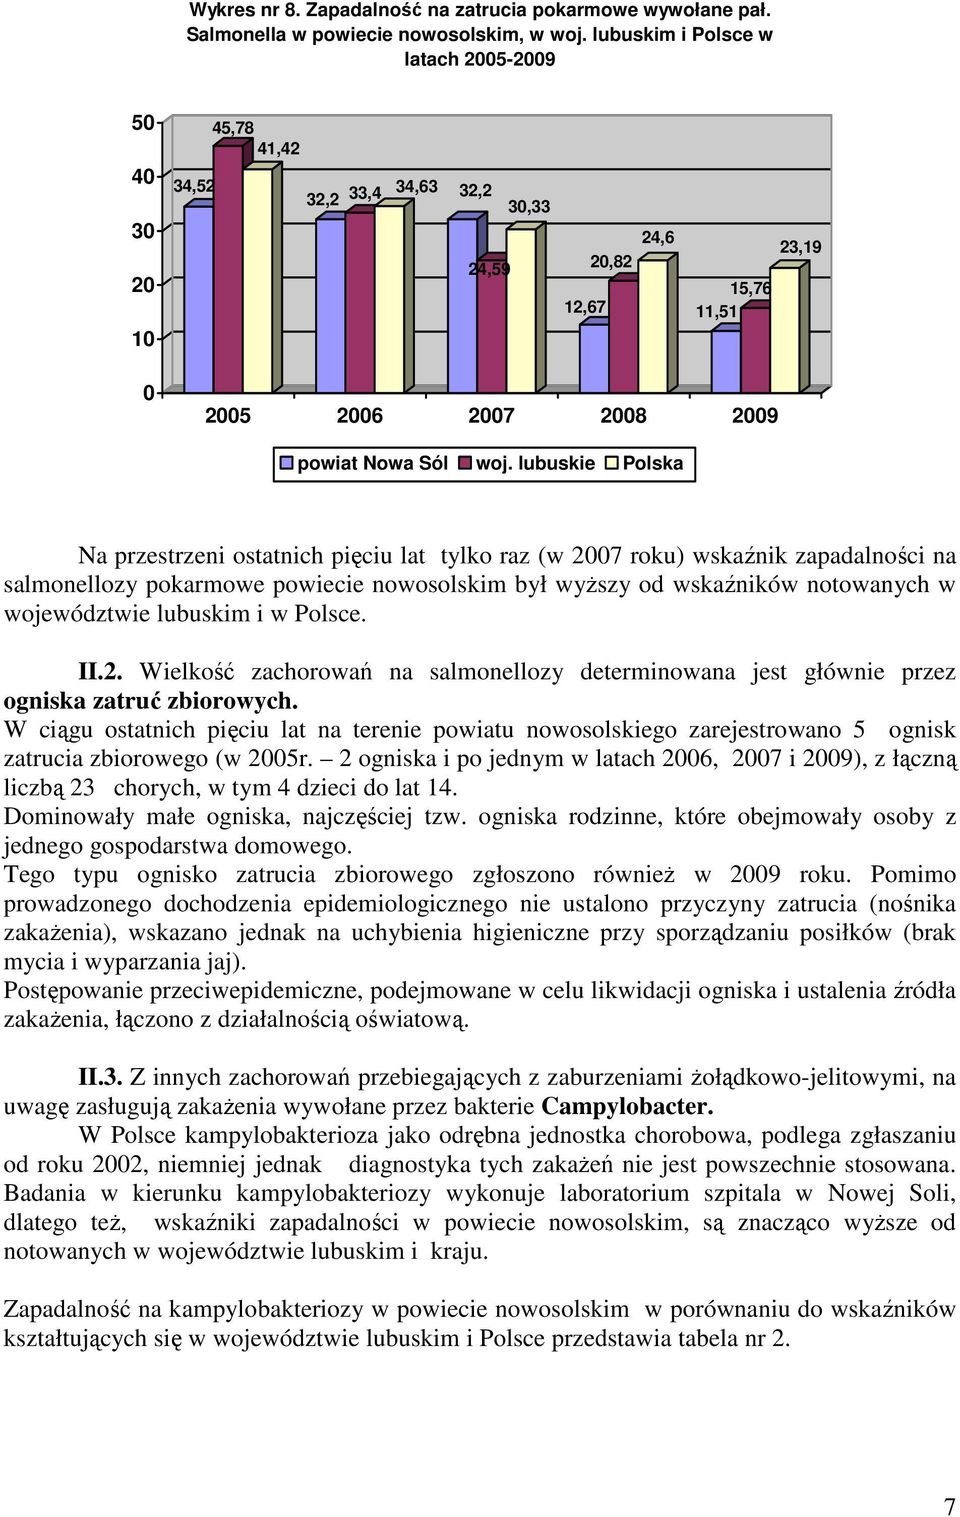 zapadalności na salmonellozy pokarmowe powiecie nowosolskim był wyŝszy od wskaźników notowanych w województwie lubuskim i w Polsce. II.2.